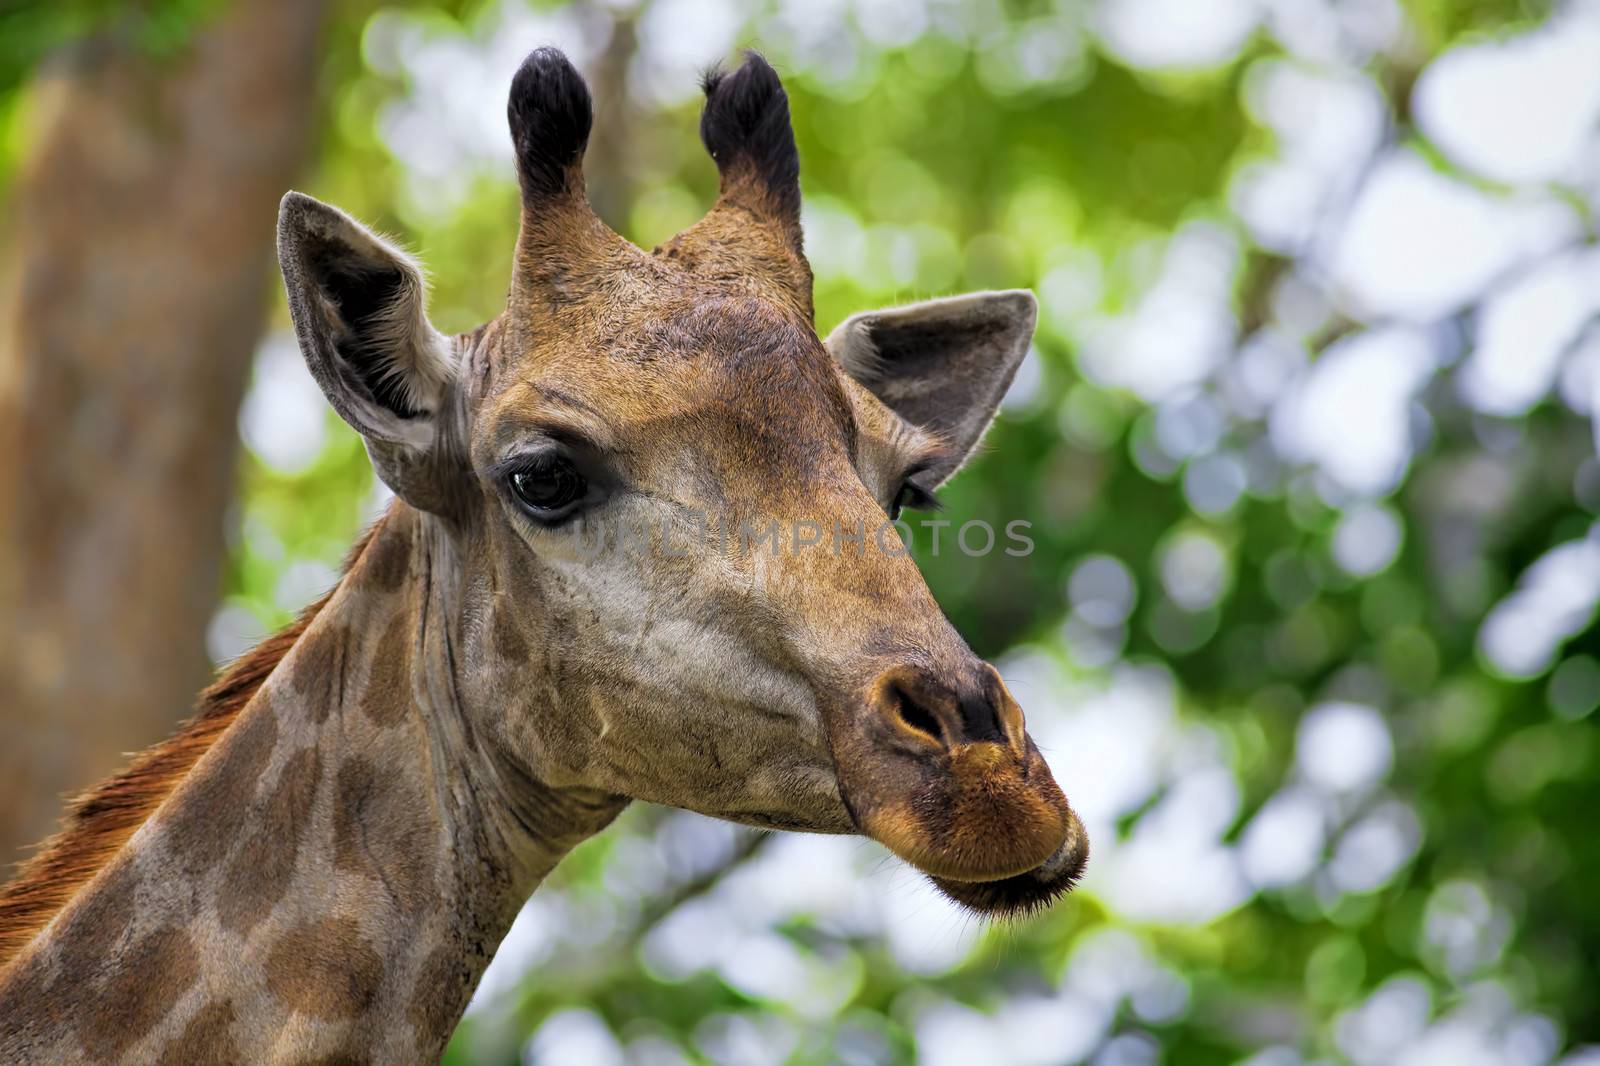 Giraffe portrait by kjorgen